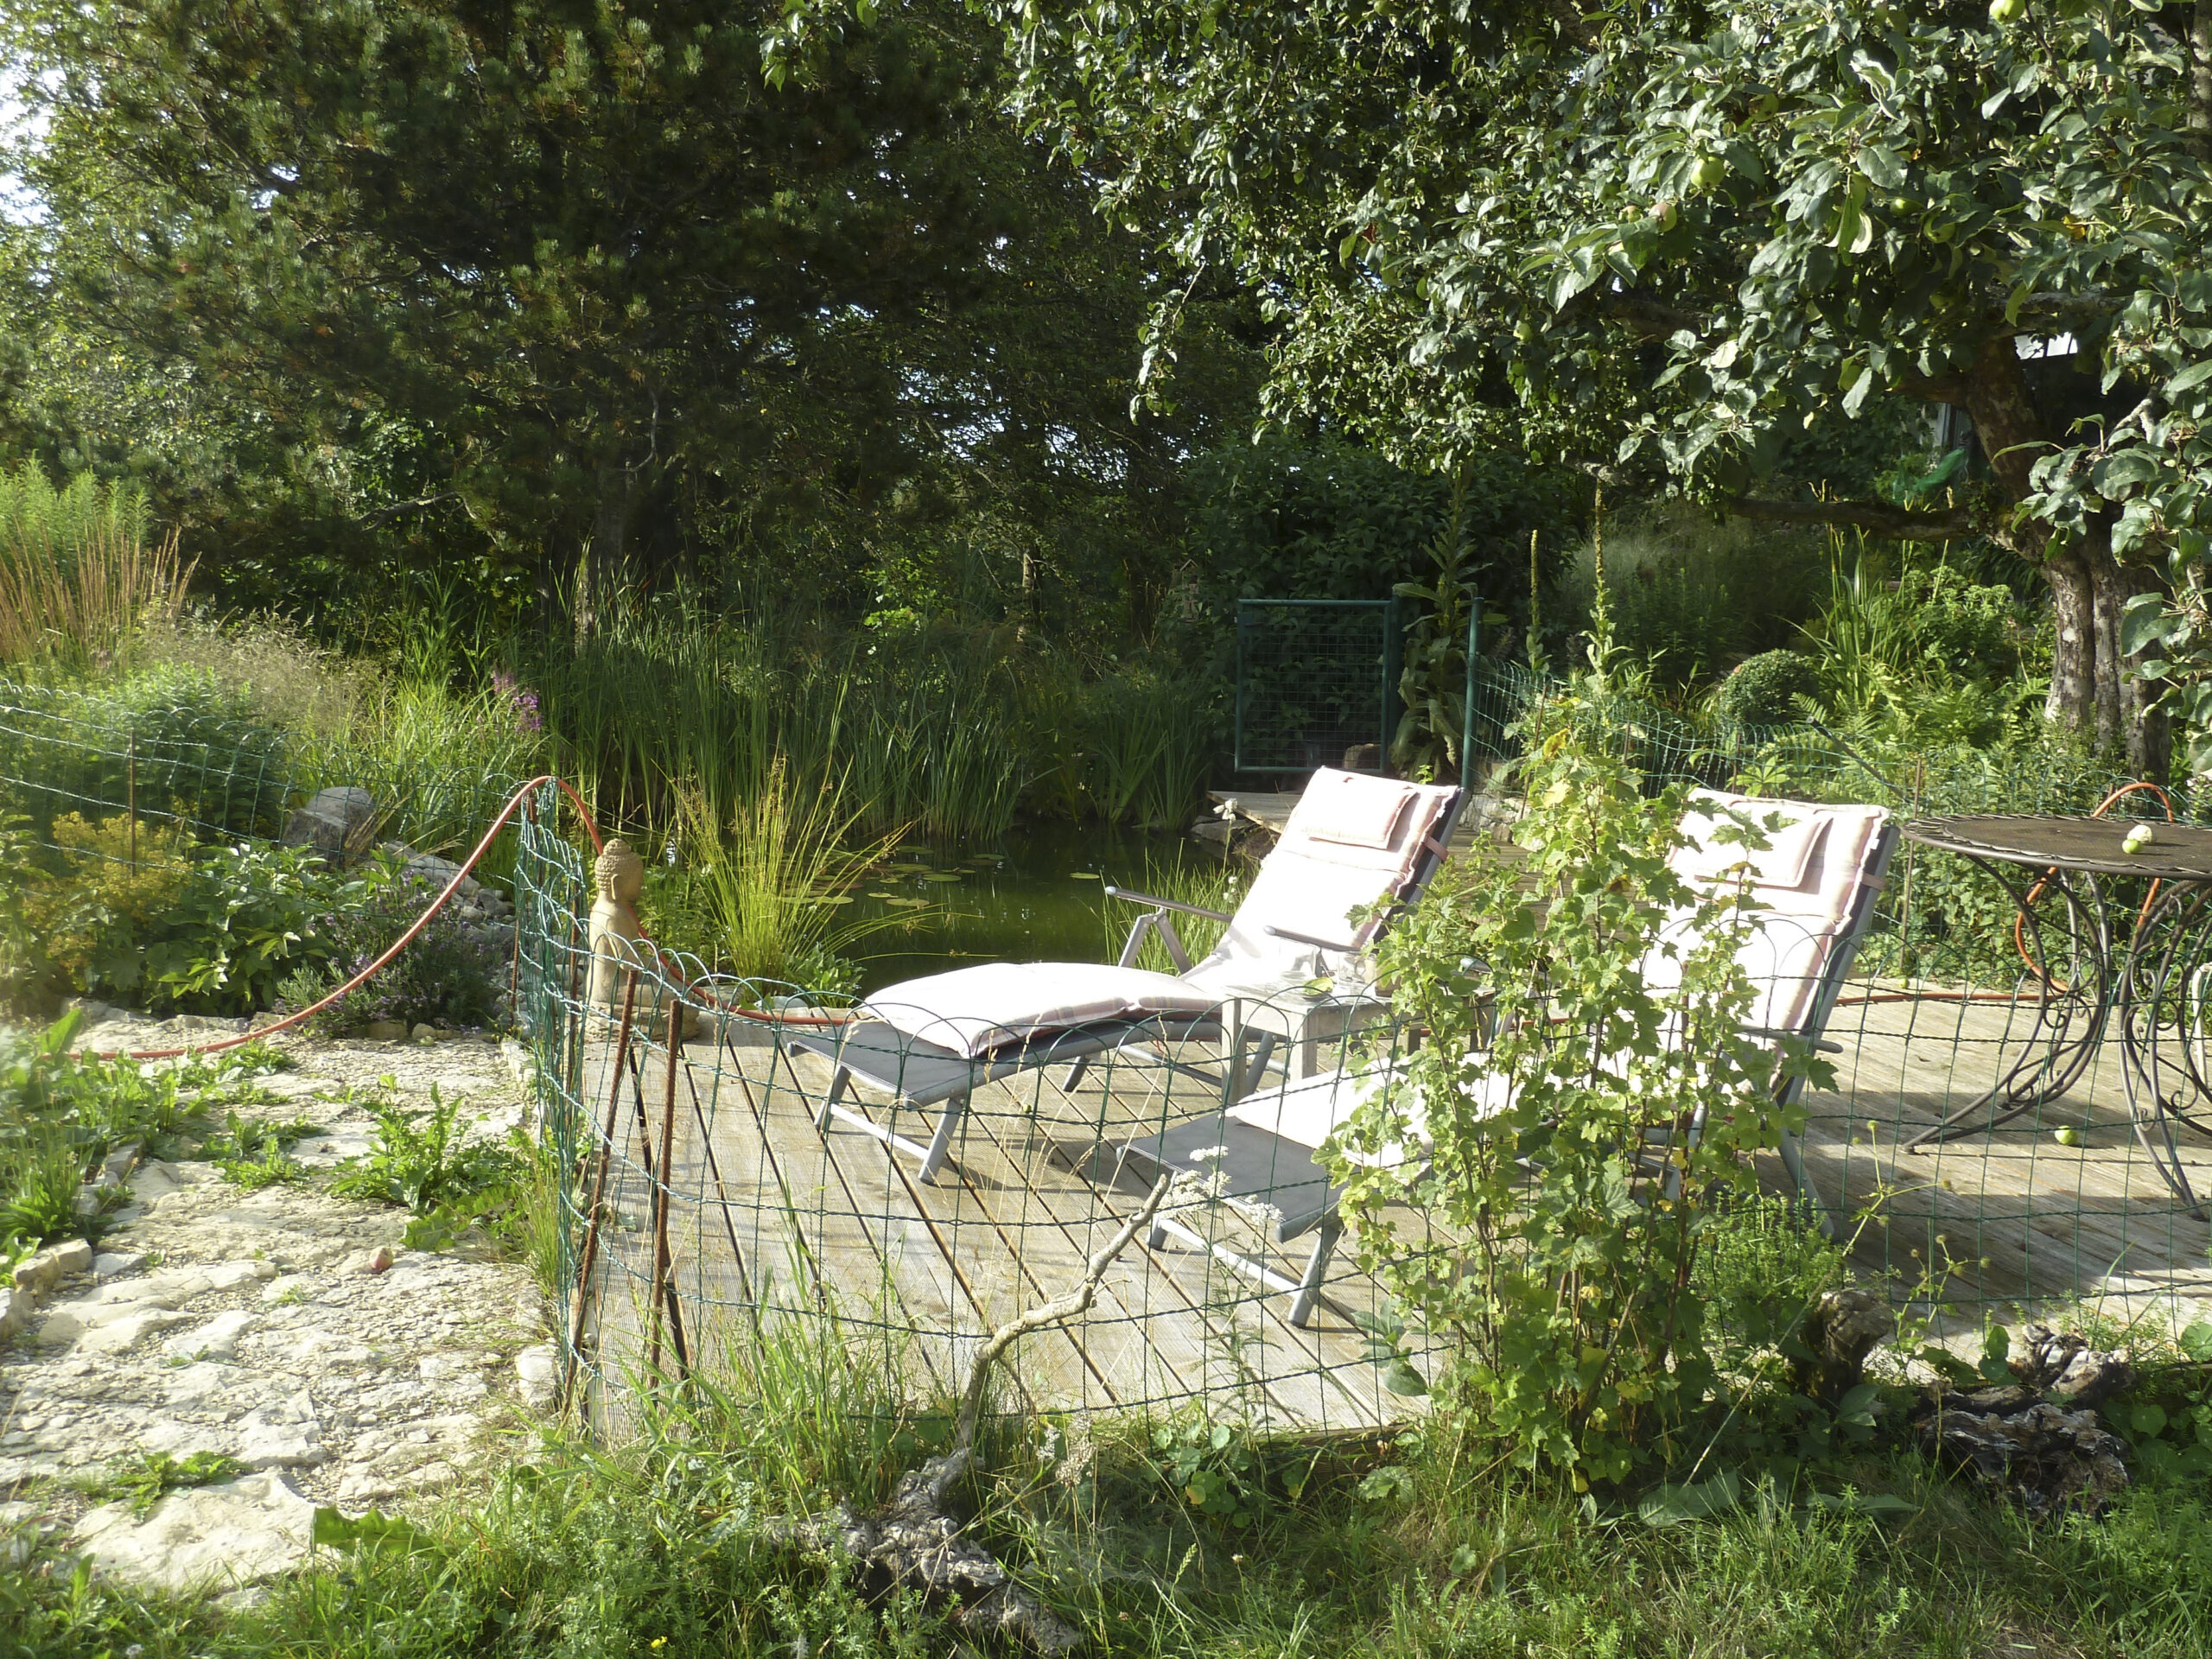 Liegestühle auf Holzplattform neben Teich und Wald- und Heckenbereich dahinter